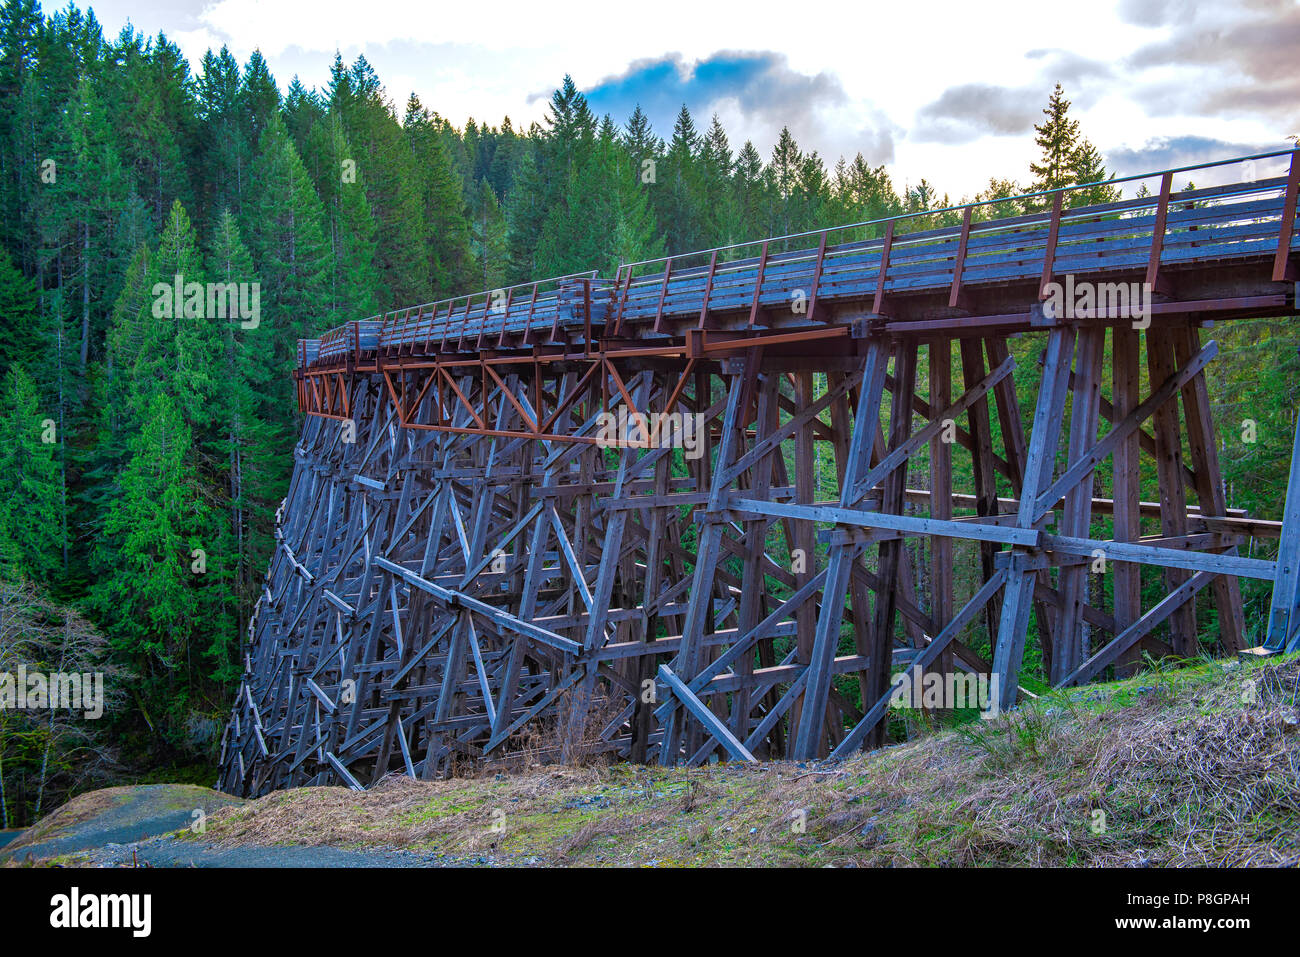 Avis de Kinsol Trestle pont de chemin de fer en bois dans l'île de Vancouver, BC Canada. Banque D'Images